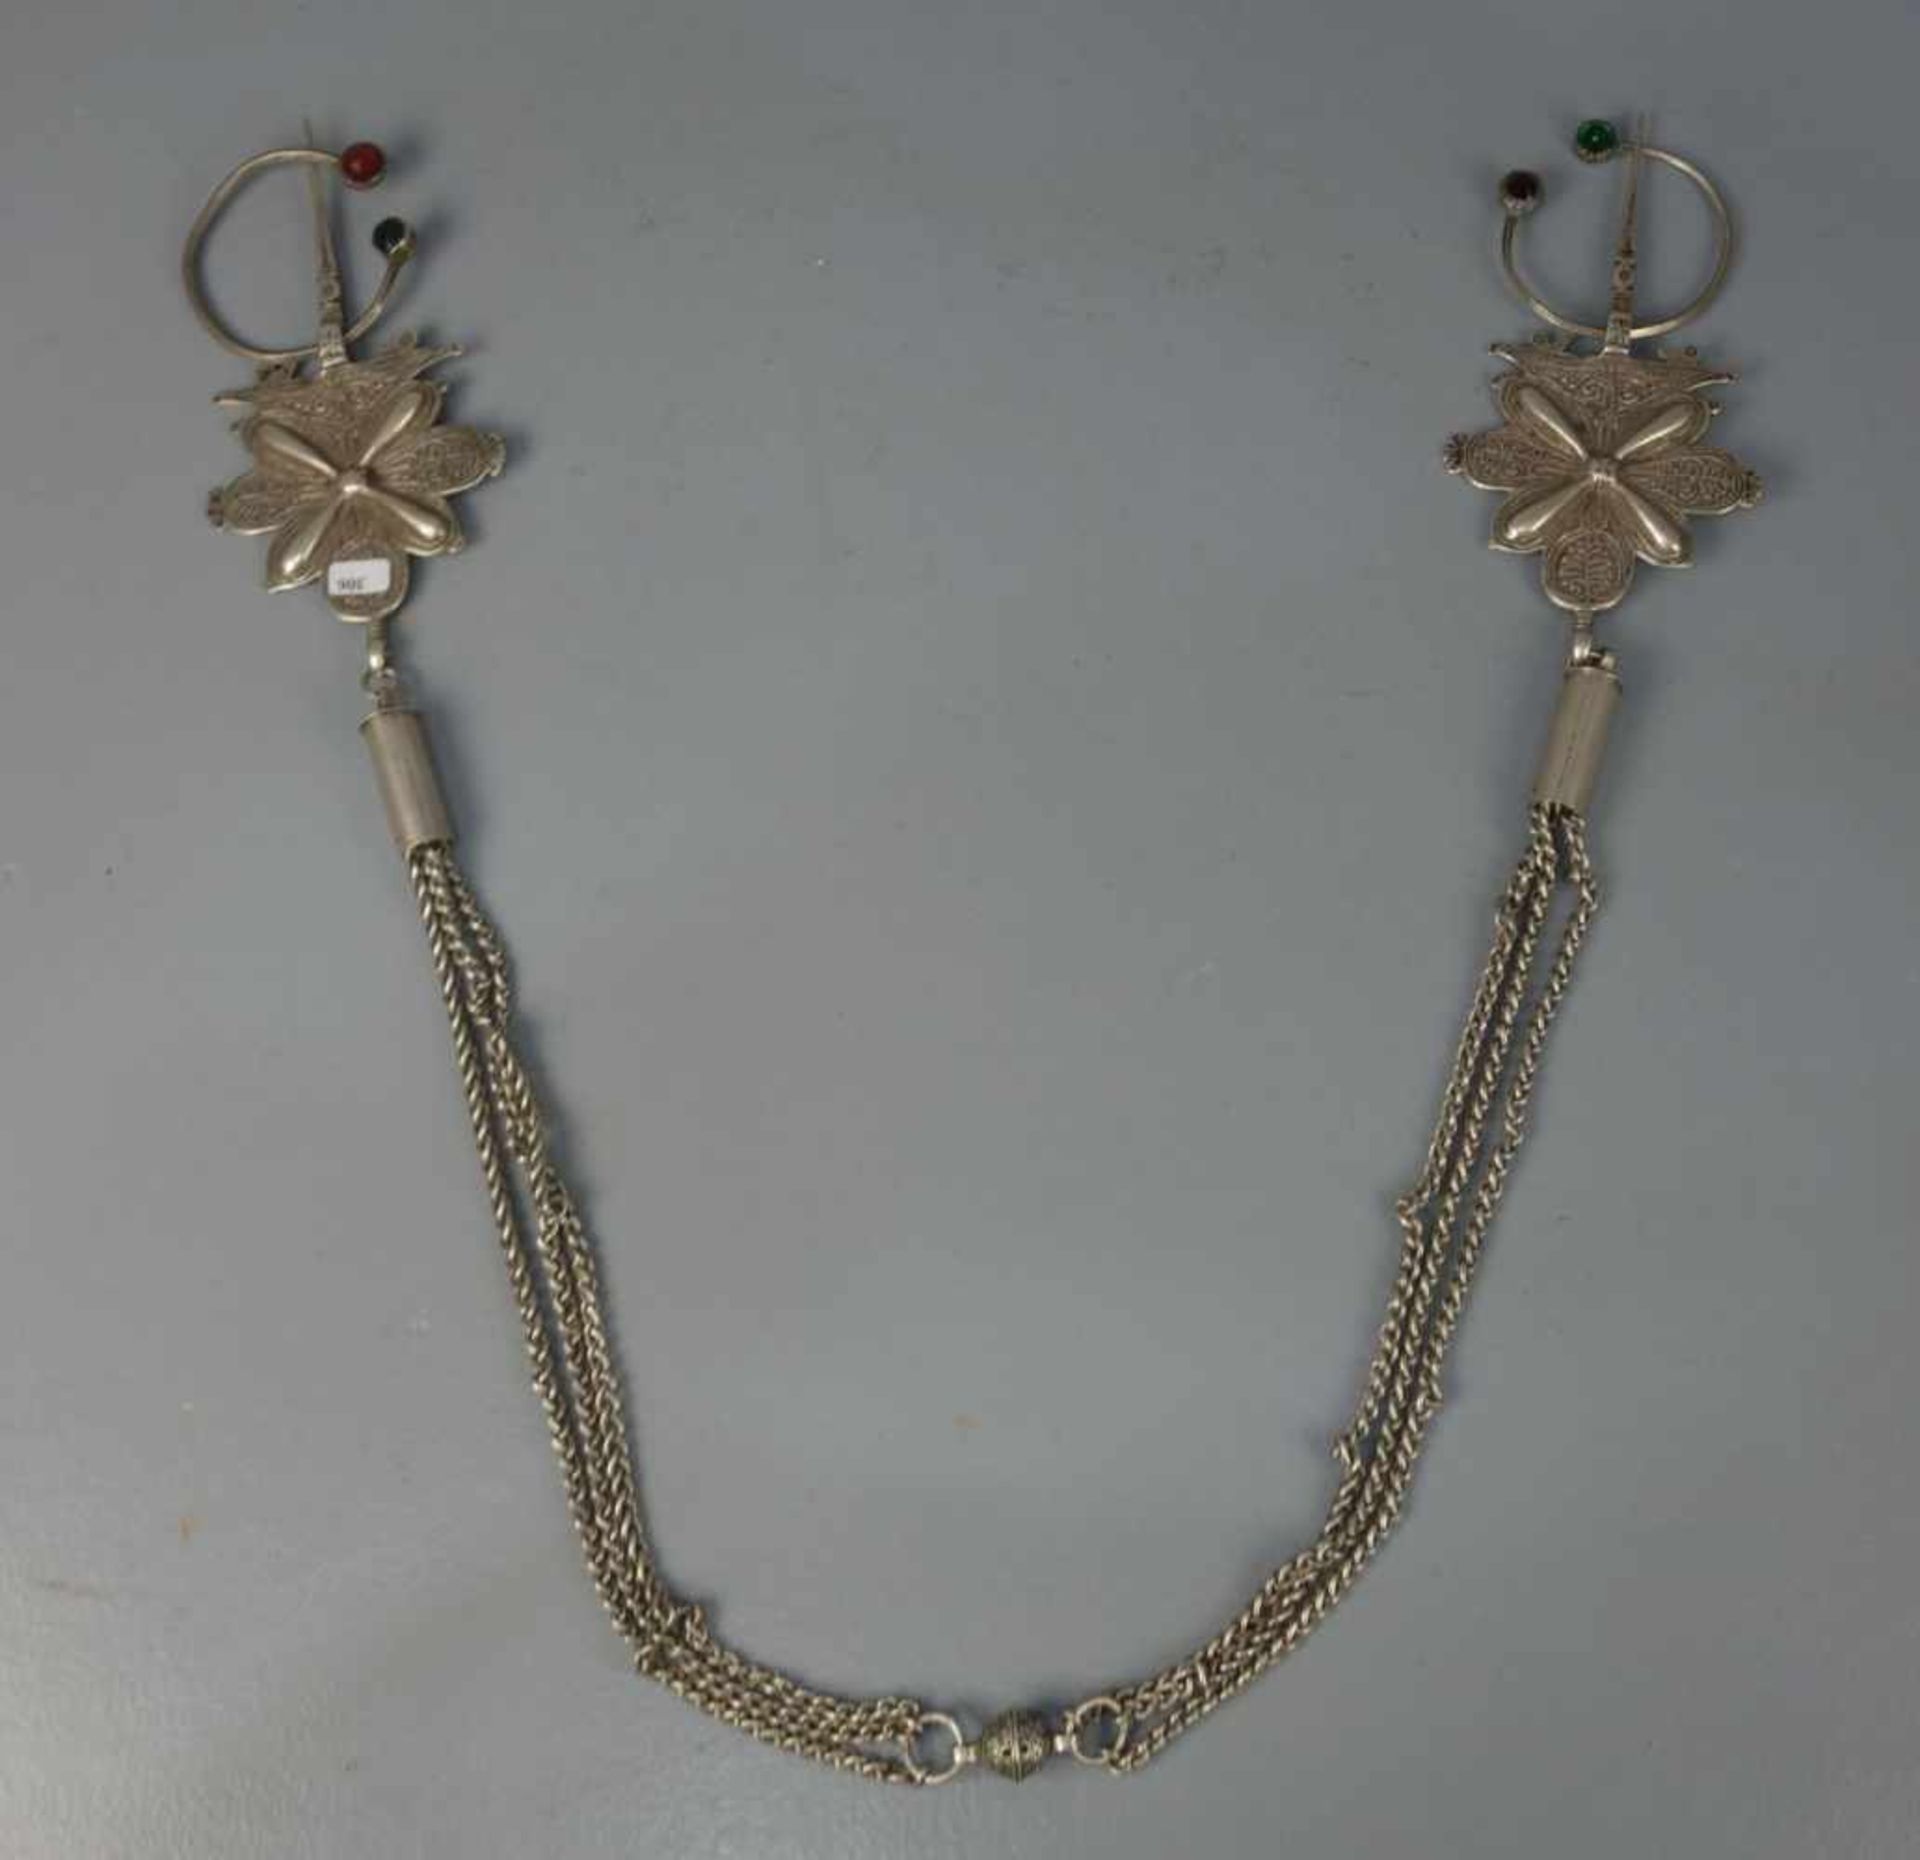 BERBER-SCHMUCK: FIBELKETTE / oriental jewellery, Chouka / Marokko, Silber und Glas (insgesamt 544,